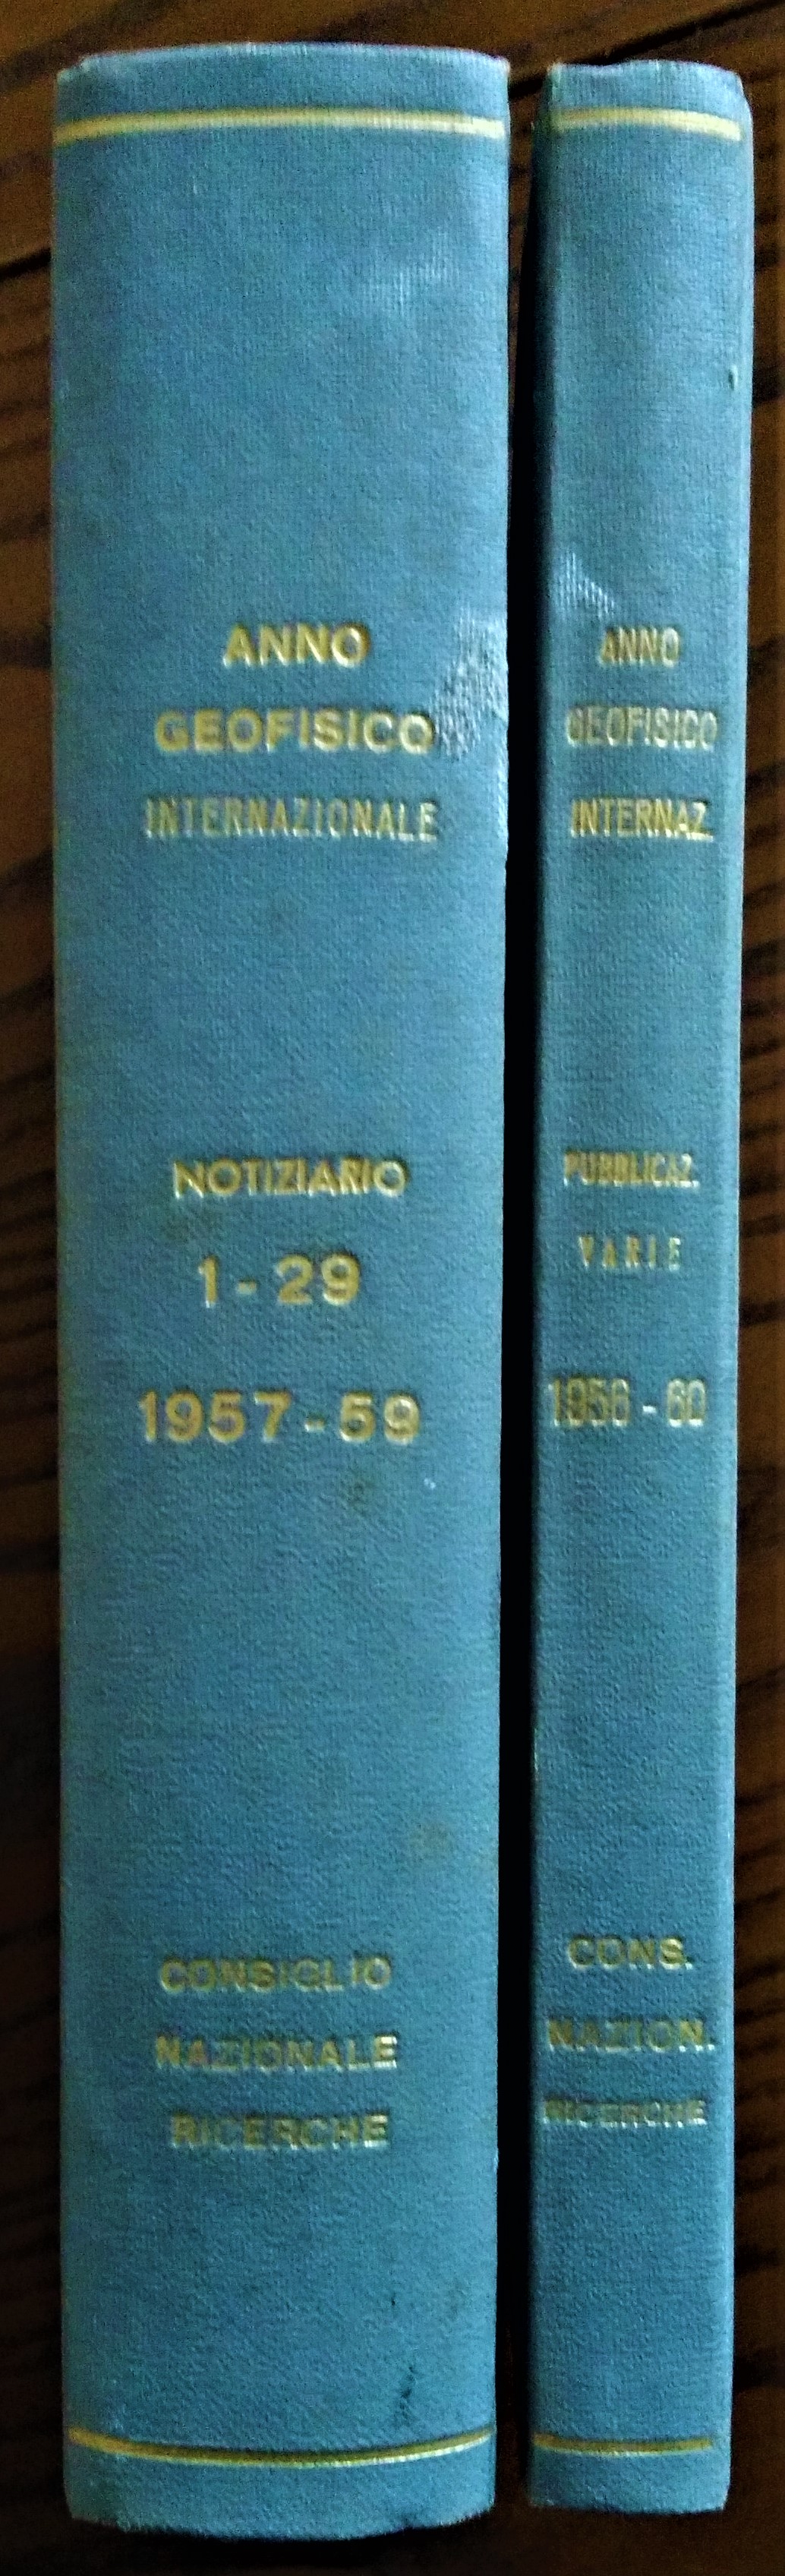 Anno Geofisico Internazionale 1957/1958. Notiziario 1-29 OFFERTO CON "Pubblicazioni varie."